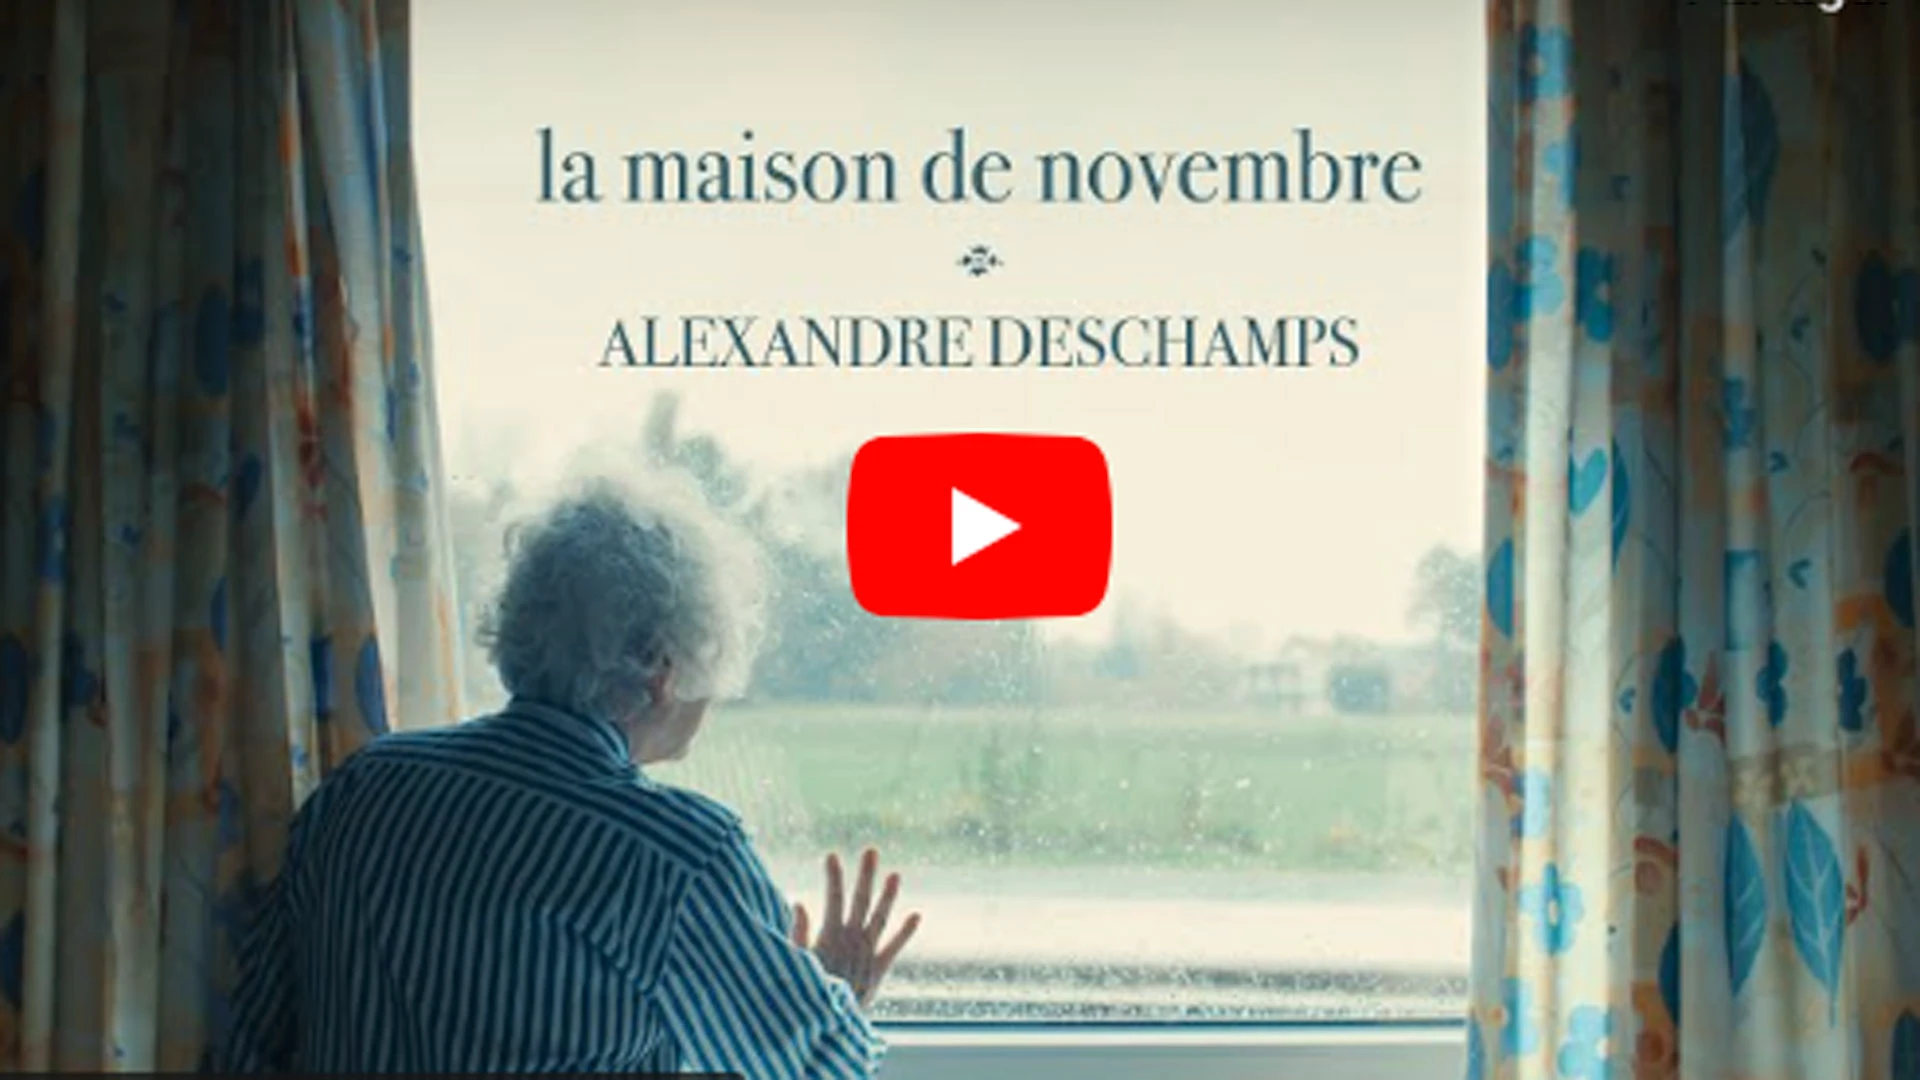 Clip : “La maison de novembre“ – Alexandre Deschamps